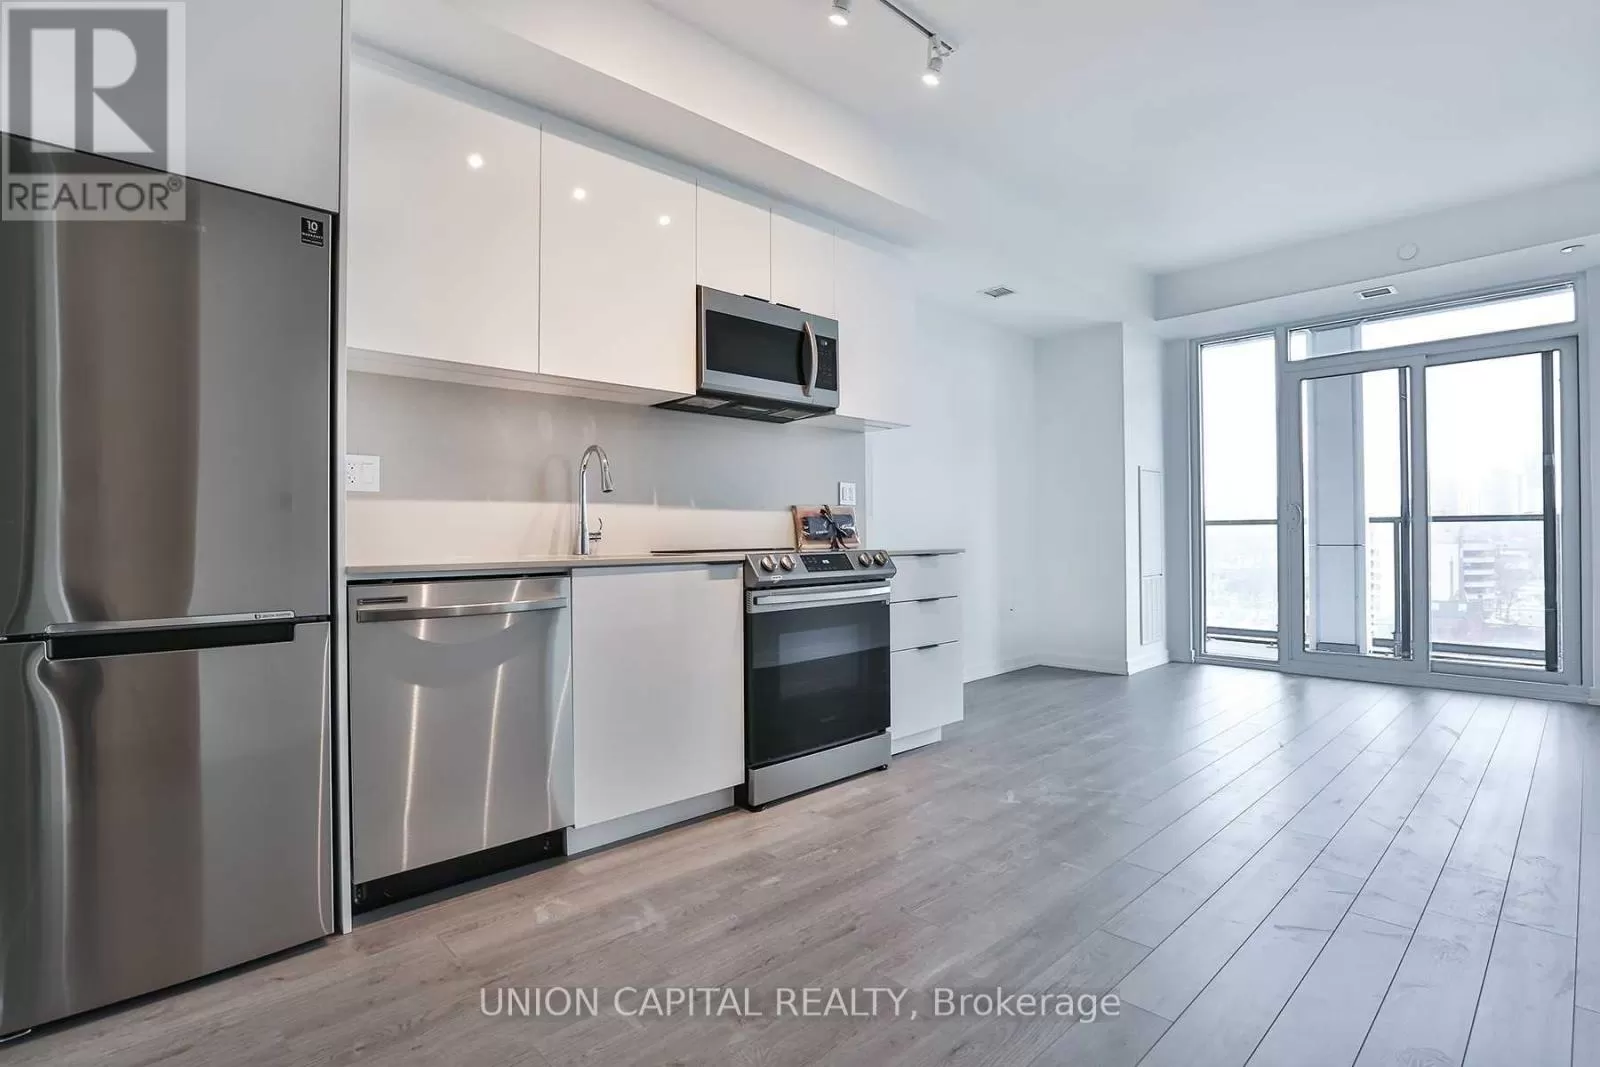 Apartment for rent: 830 - 50 Power Street, Toronto, Ontario M5A 0V3